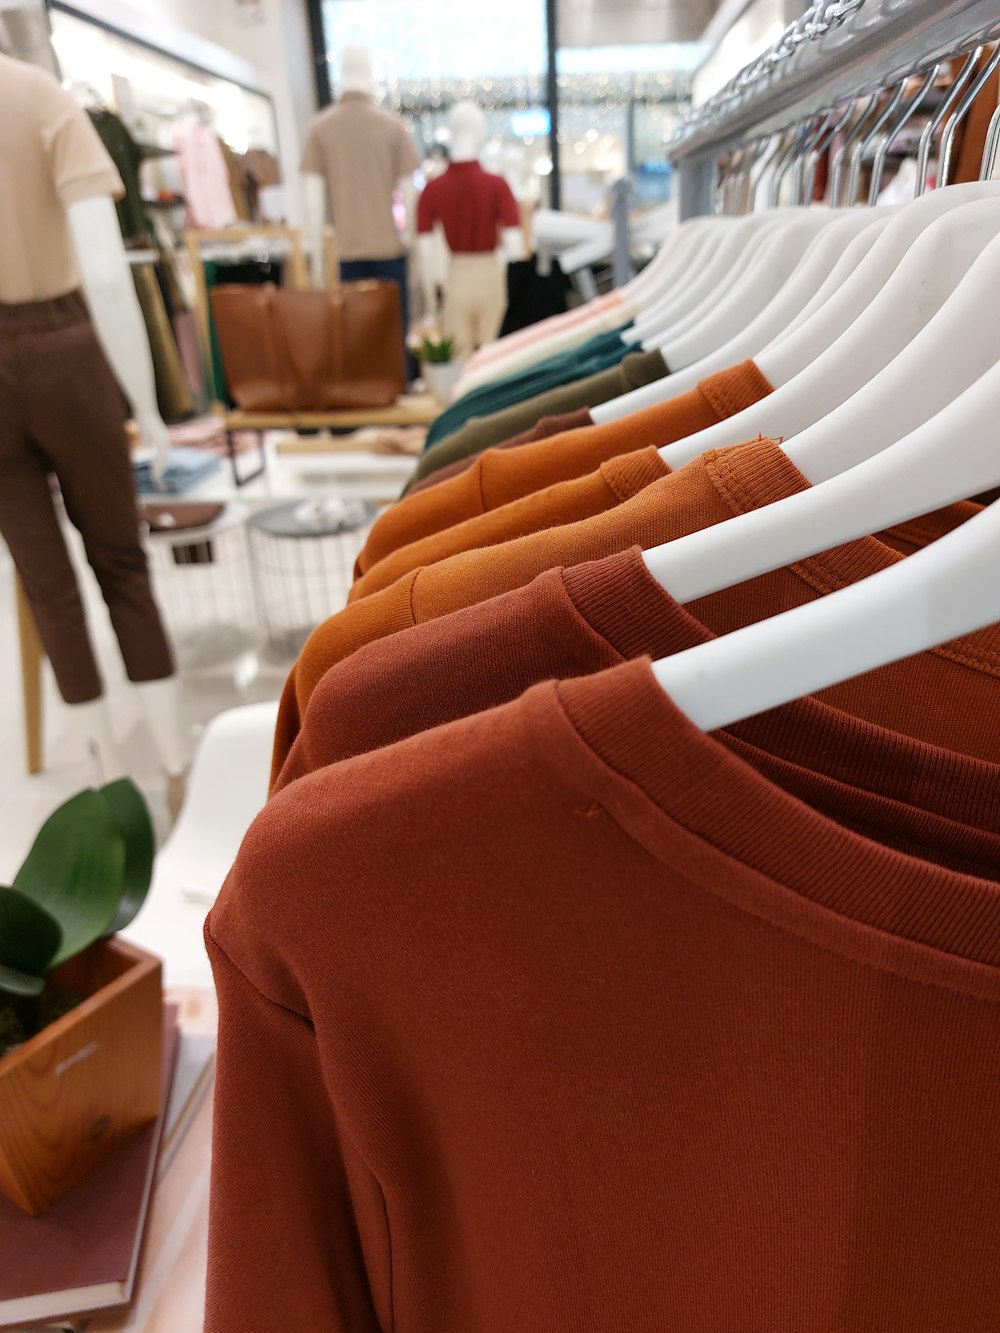 une rangée de chemises accrochées à un support dans un magasin de vêtements